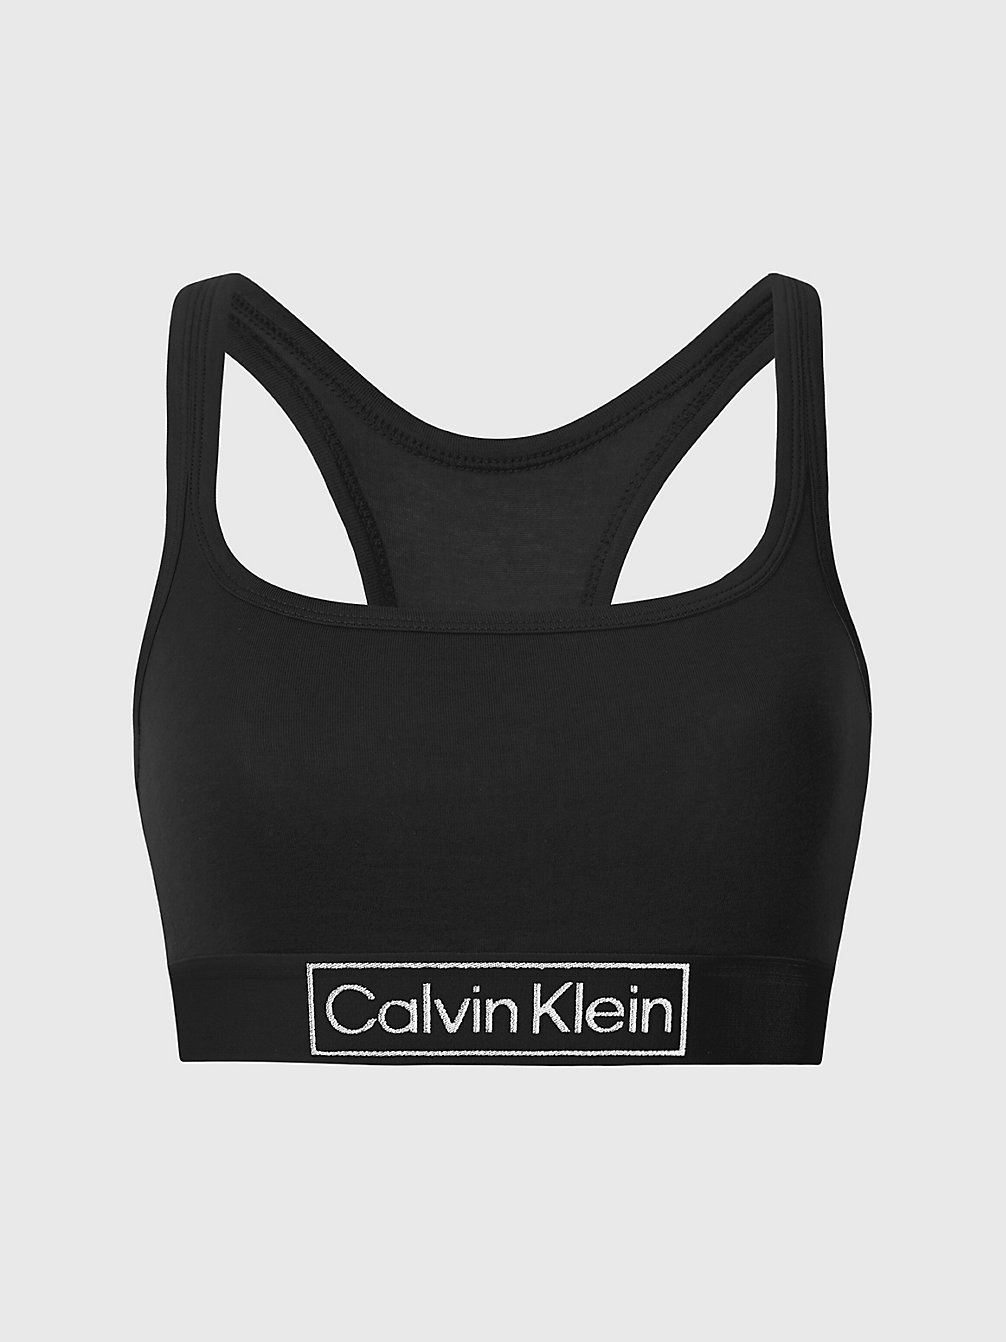 BLACK Bralette - Reimagine Heritage undefined Damen Calvin Klein